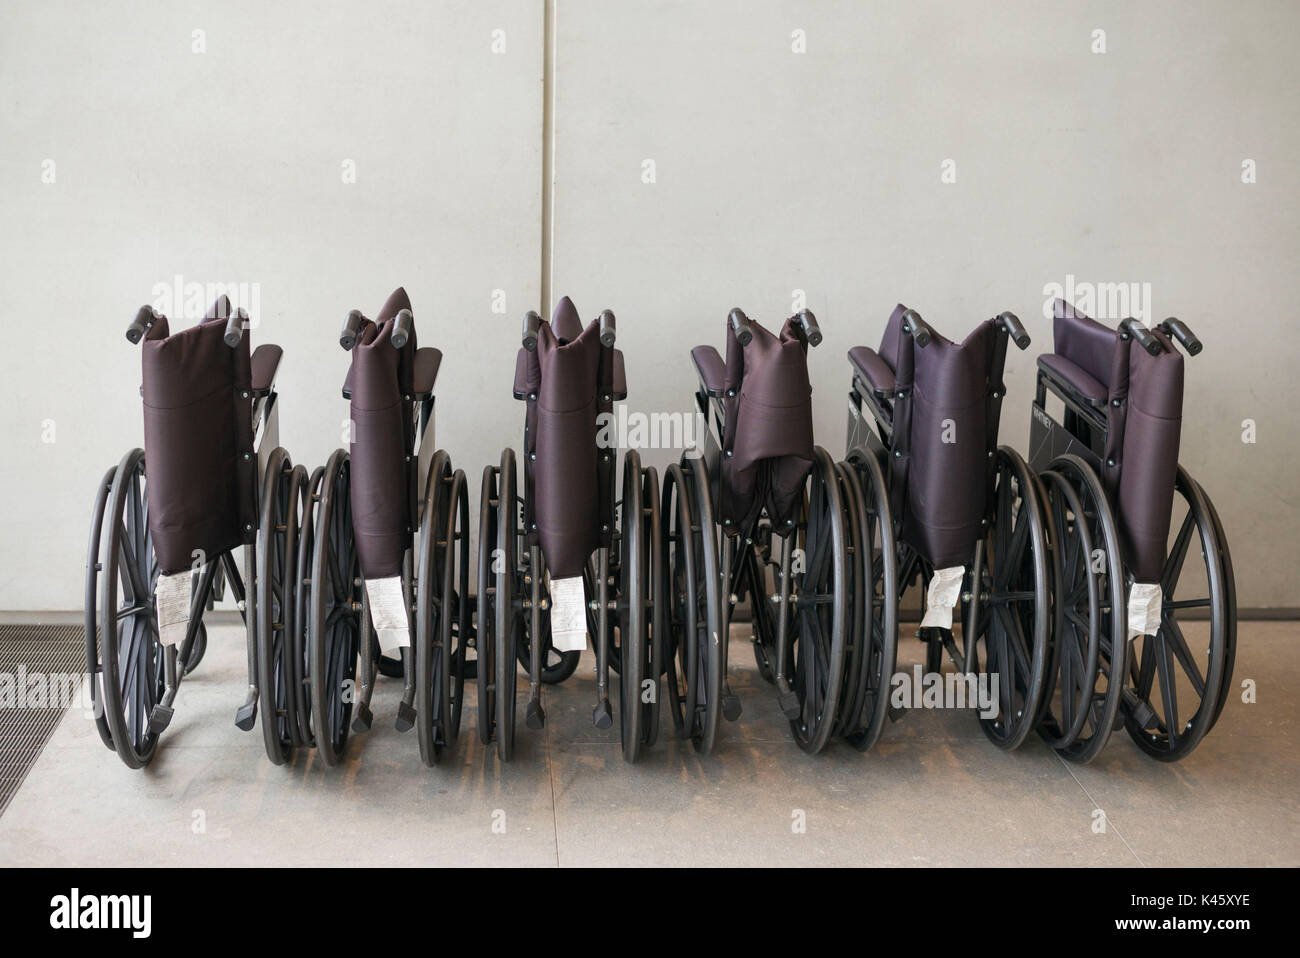 USA, New York, New York City, Lower Manhattan, The Whitney Museum, wheelchairs Stock Photo